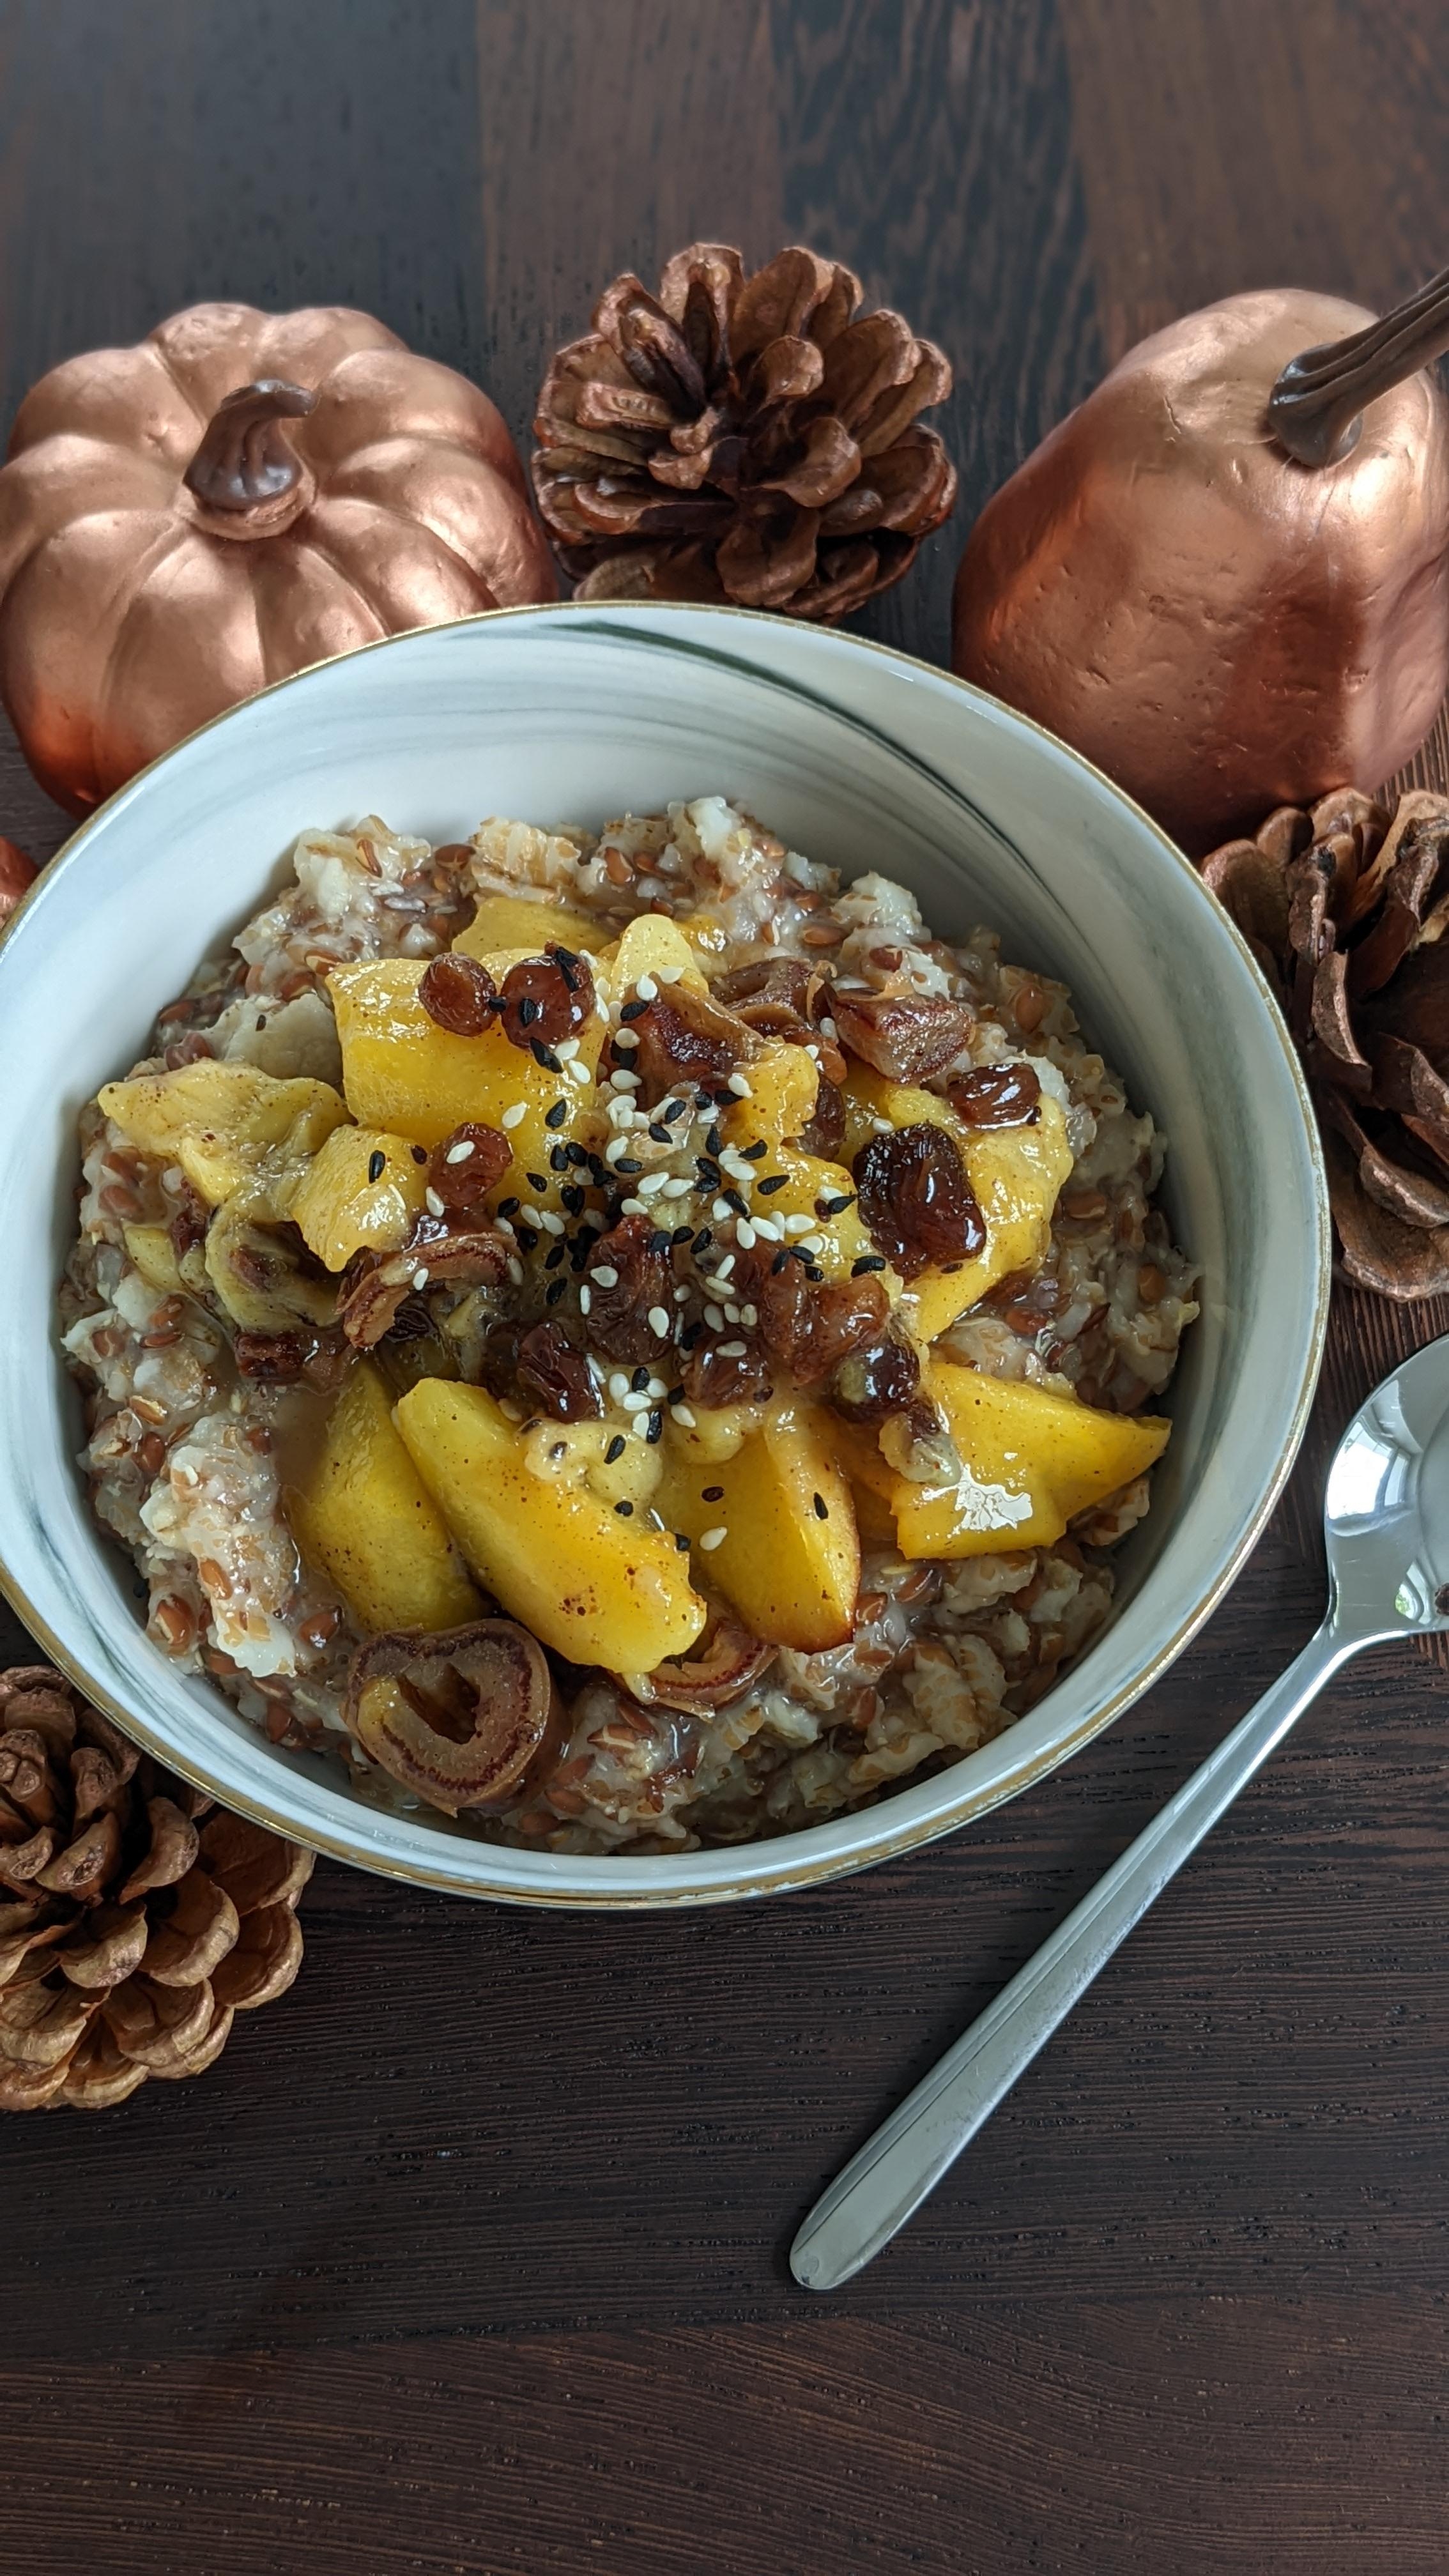 Lecker Frühstücks-Porridge mit karamellisieren Pfirsichen.🍑
#frühstück #food #lecker